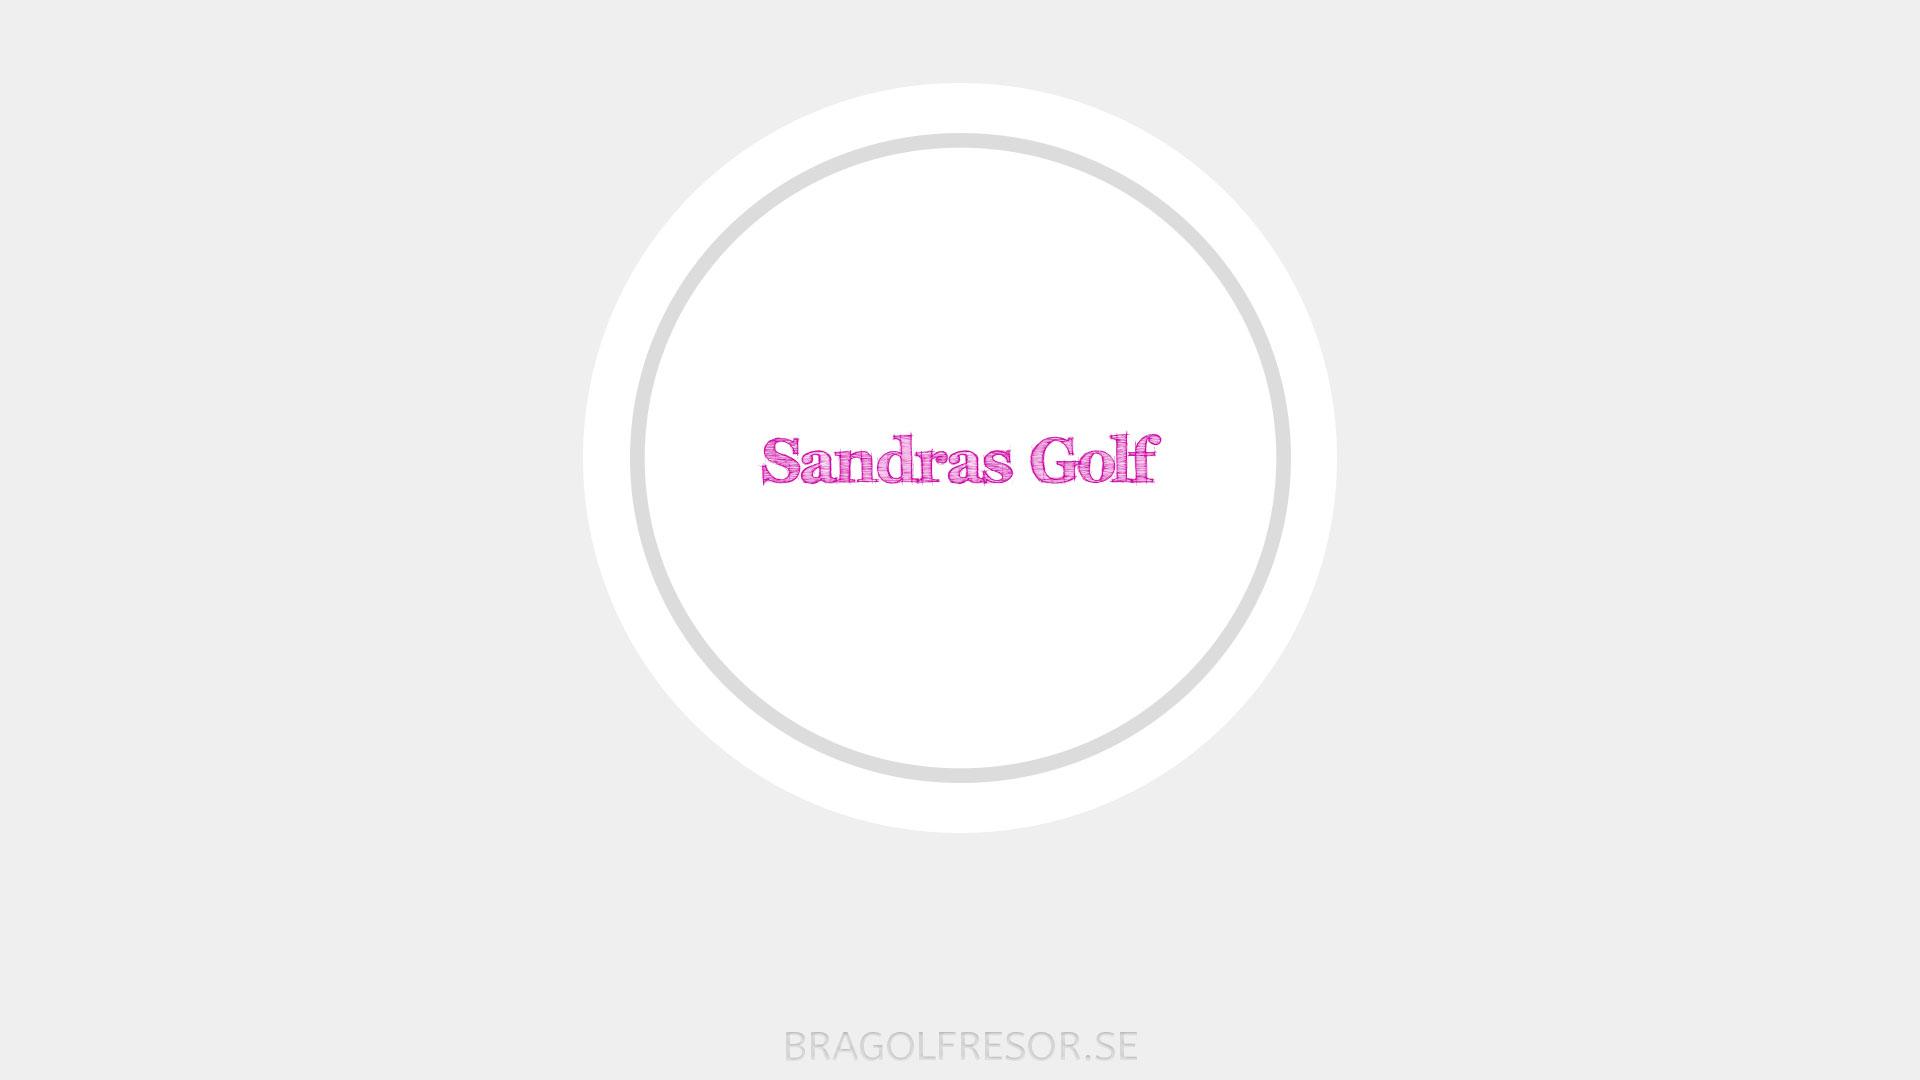 Sandras golf